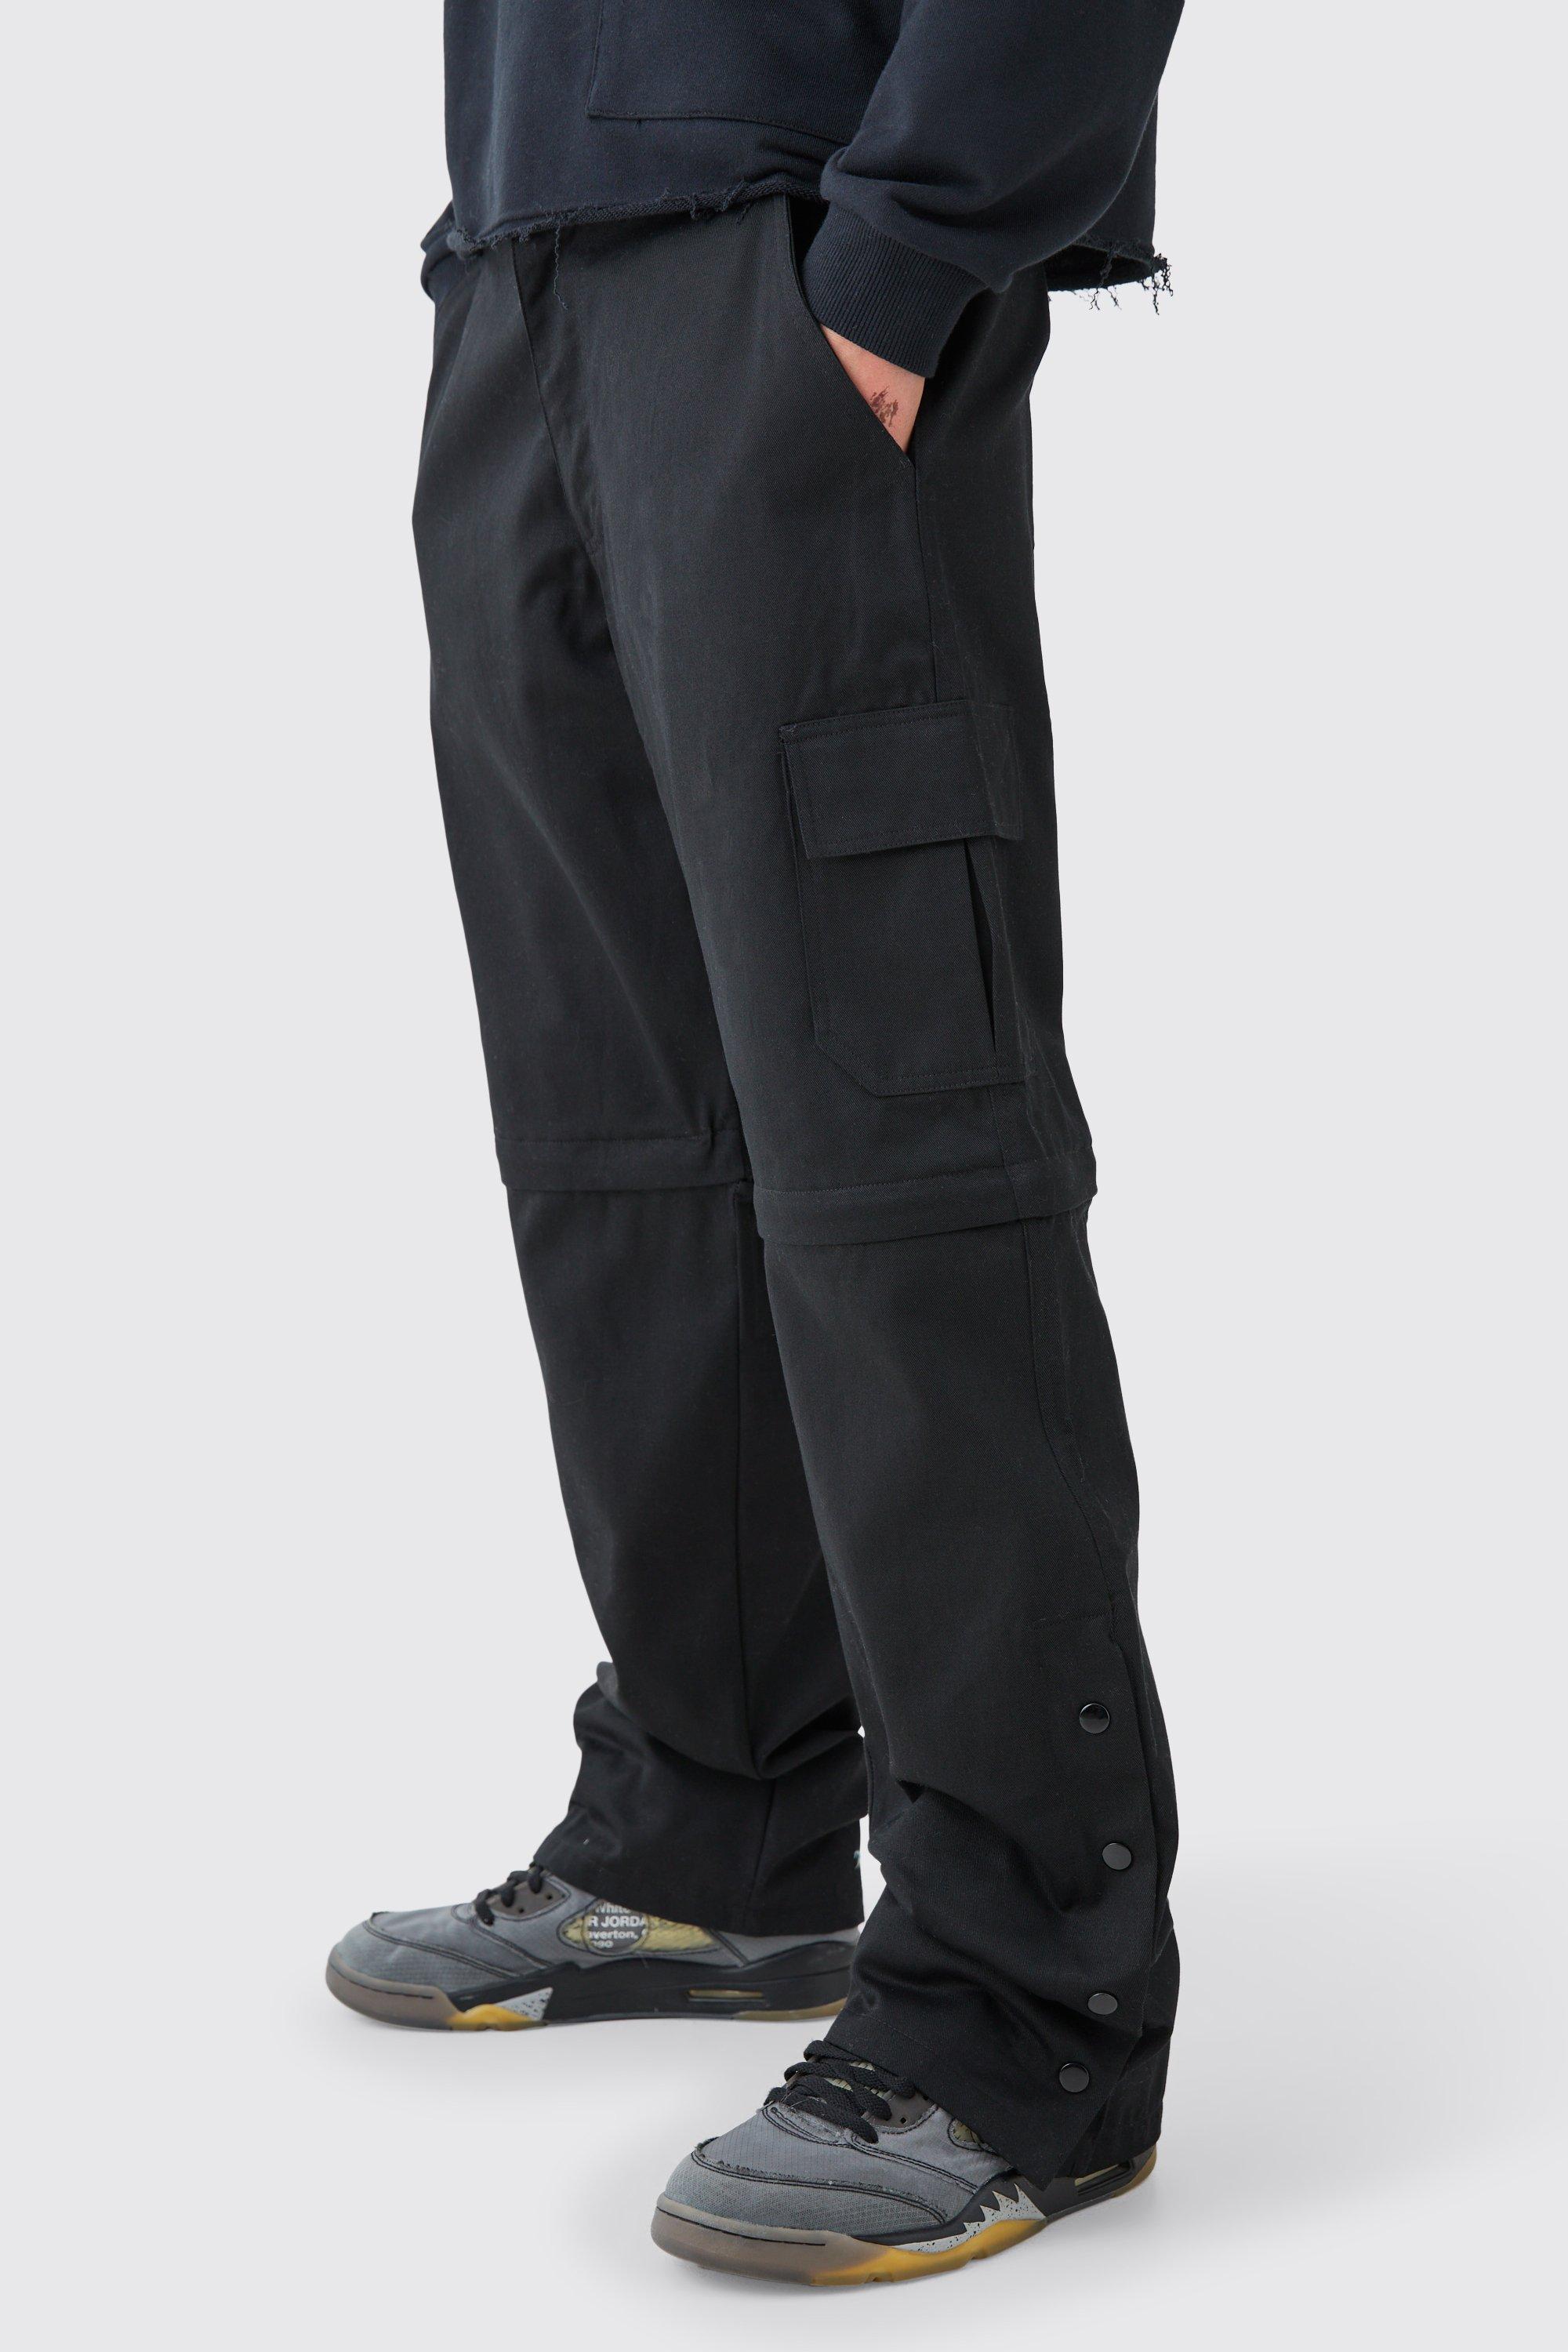 Image of Pantaloni Cargo rilassati in twill con vita fissa, bottoni a pressione sul fondo e zip, Nero